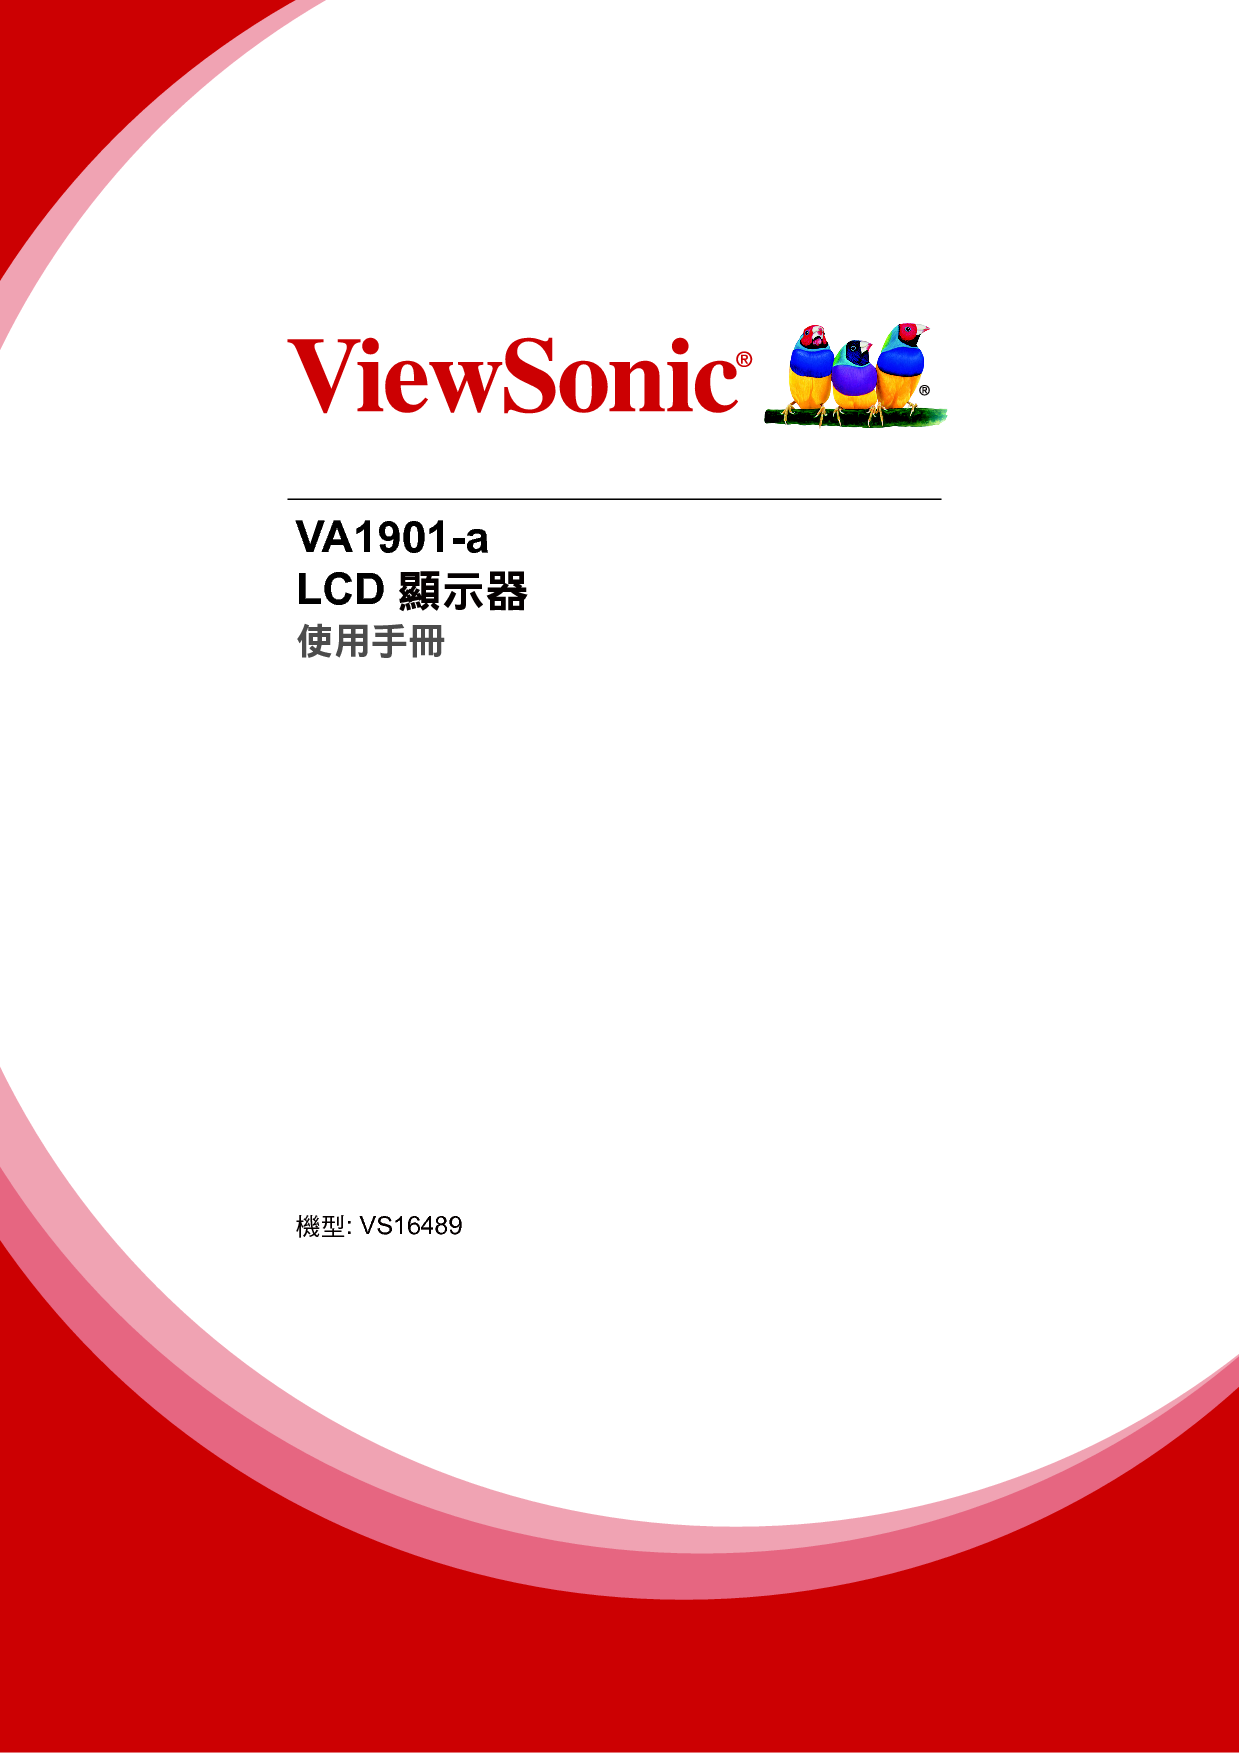 优派 ViewSonic VA1901-a 繁体 使用手册 封面